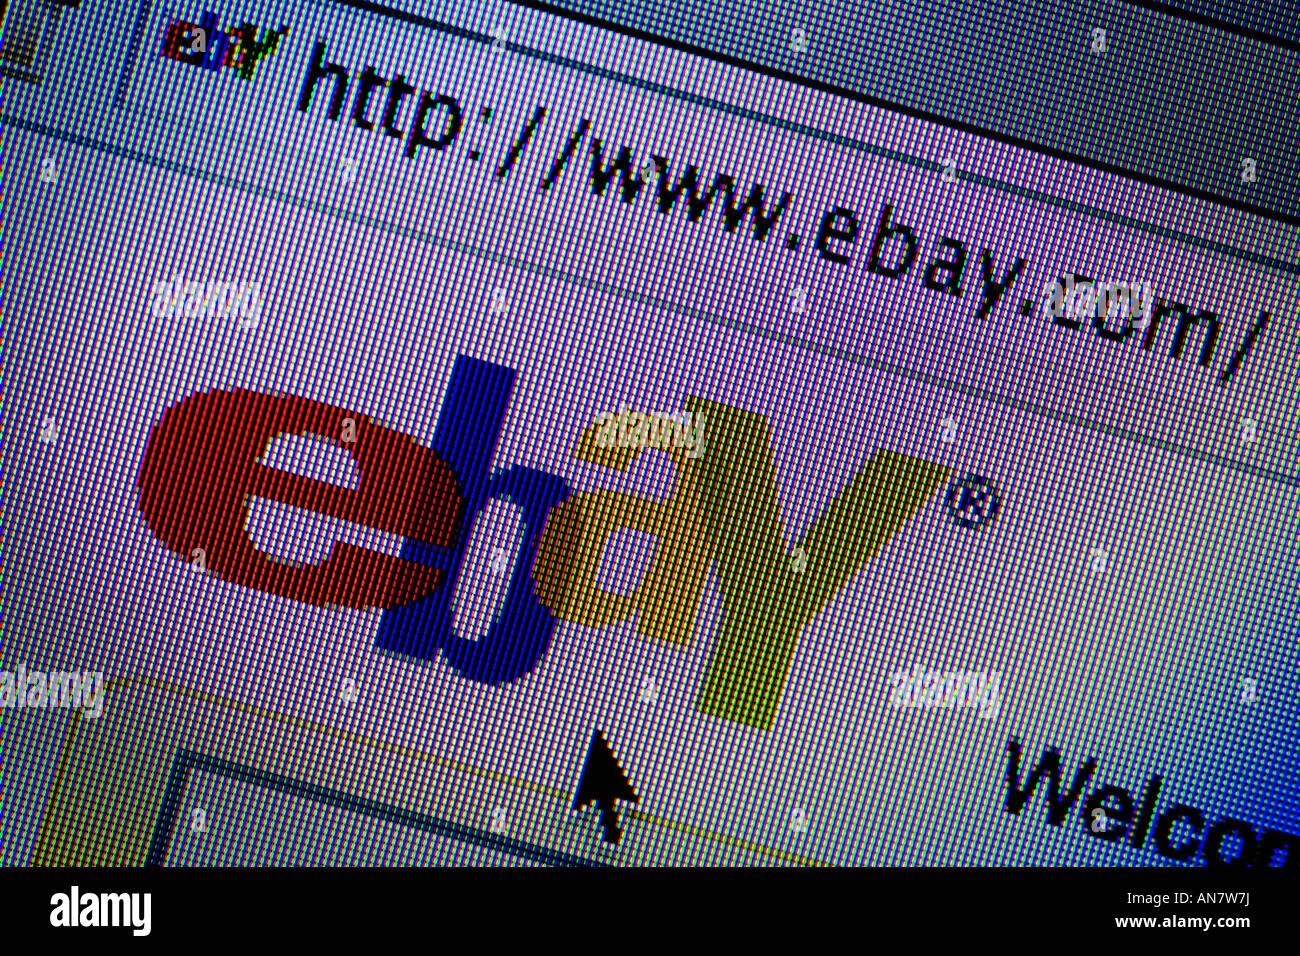 Site de vente aux enchères ebay ebay www com Banque D'Images